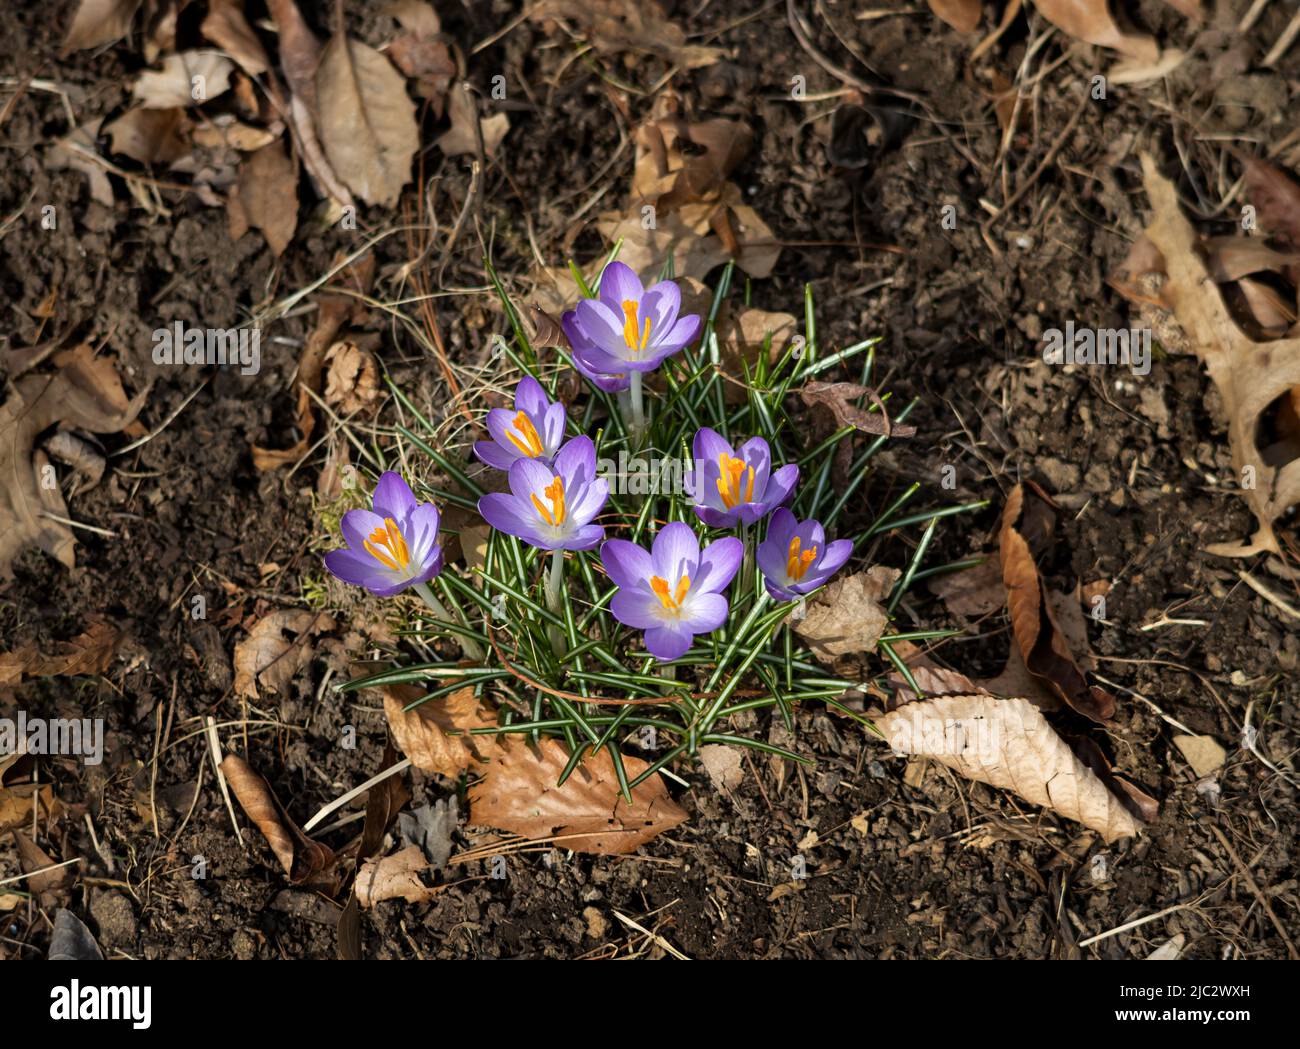 El crocus púrpura crece en invierno o primavera en el follaje verde, condado de Lancaster, Pennsylvania Foto de stock